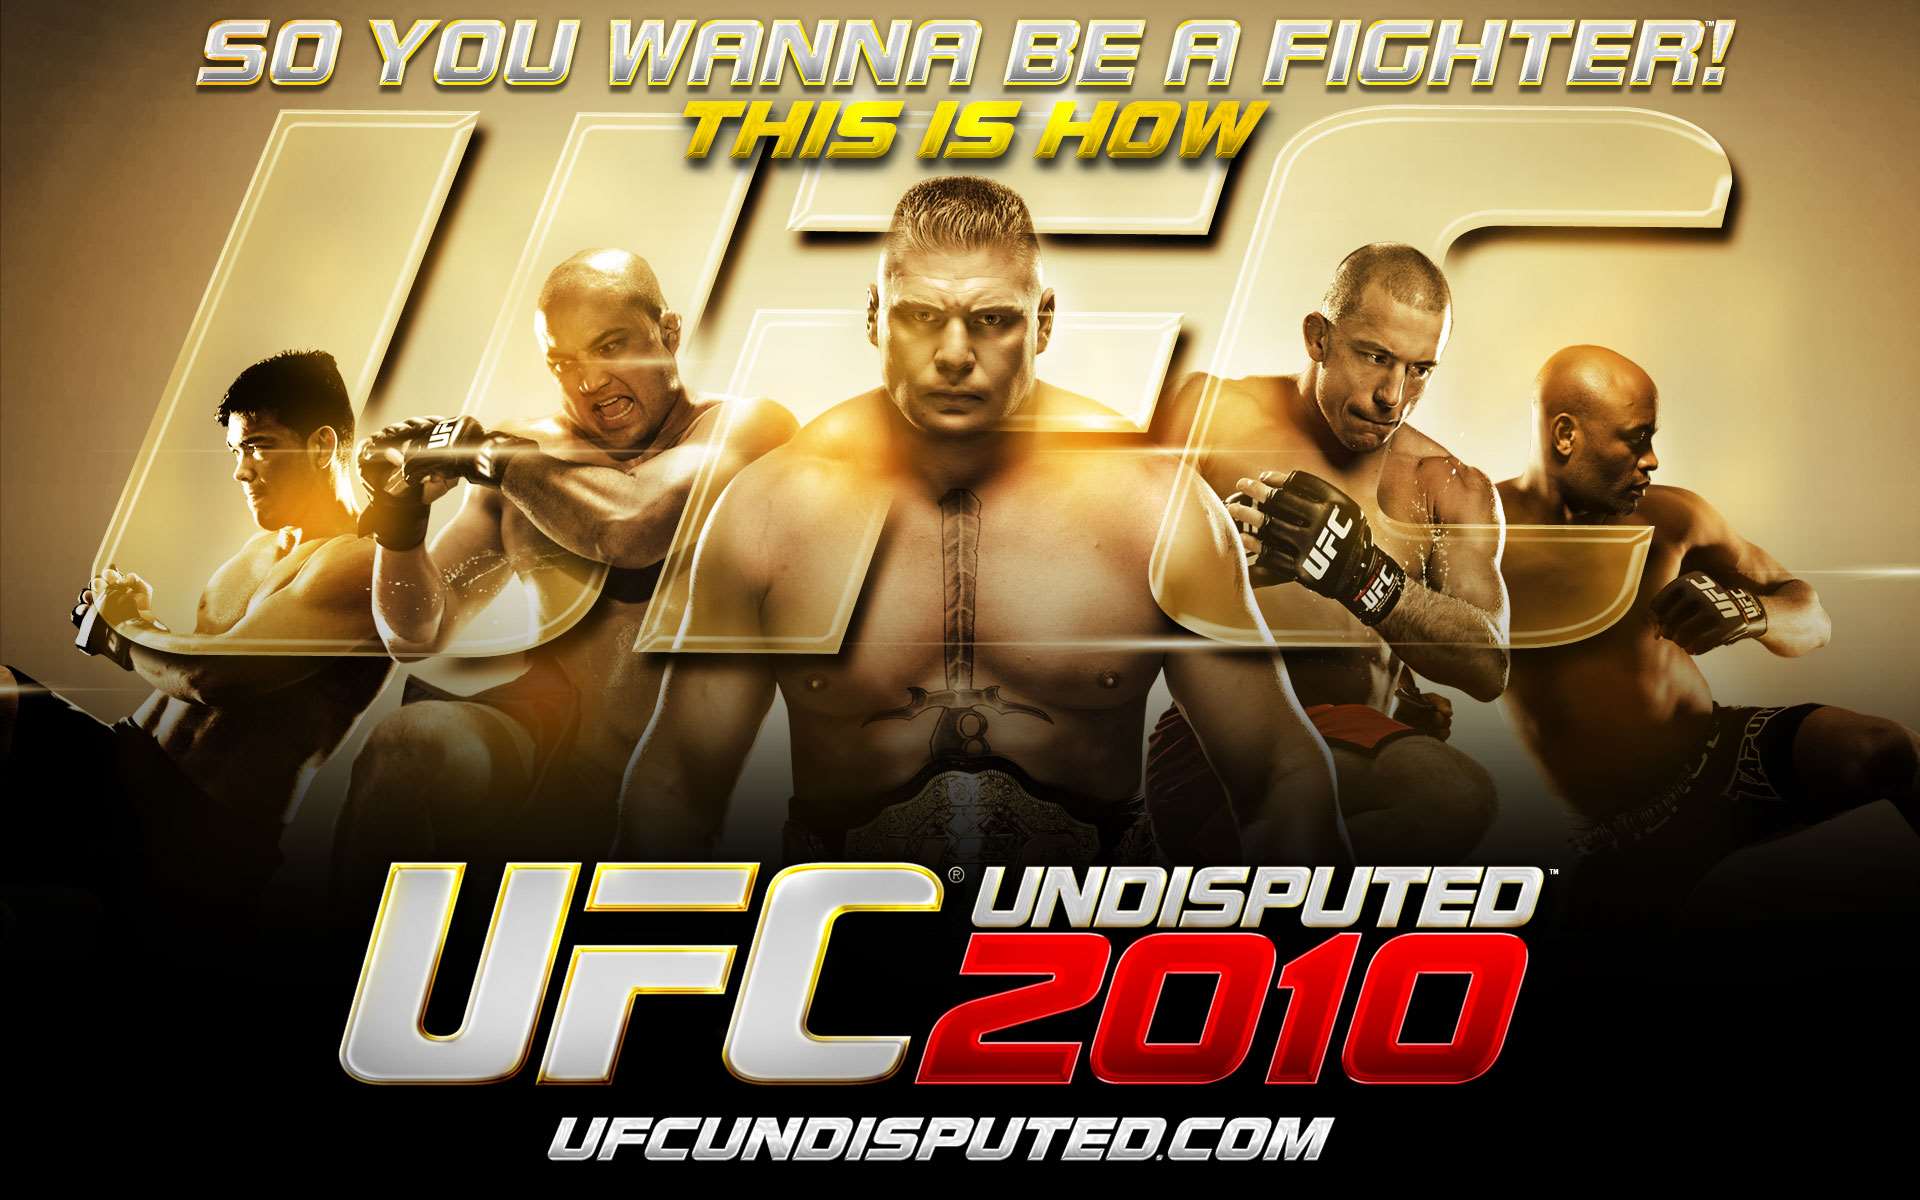 UFC Undisputed 2010 Wallpaper - 3 (1920 x 1200)